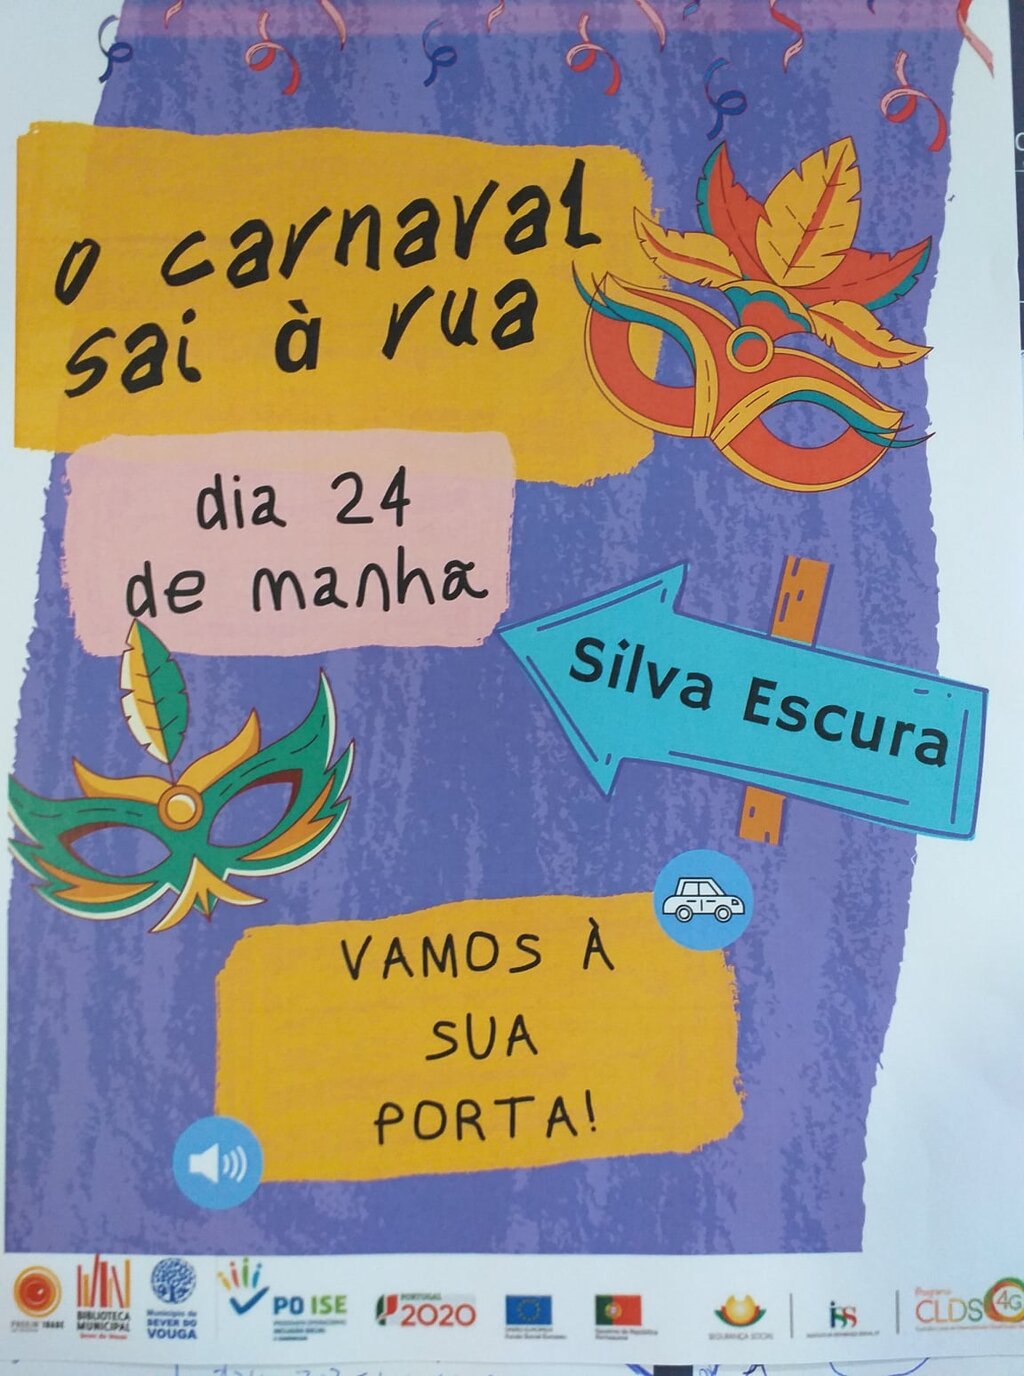 24 fev - carnaval sai à Rua - Silva Escura